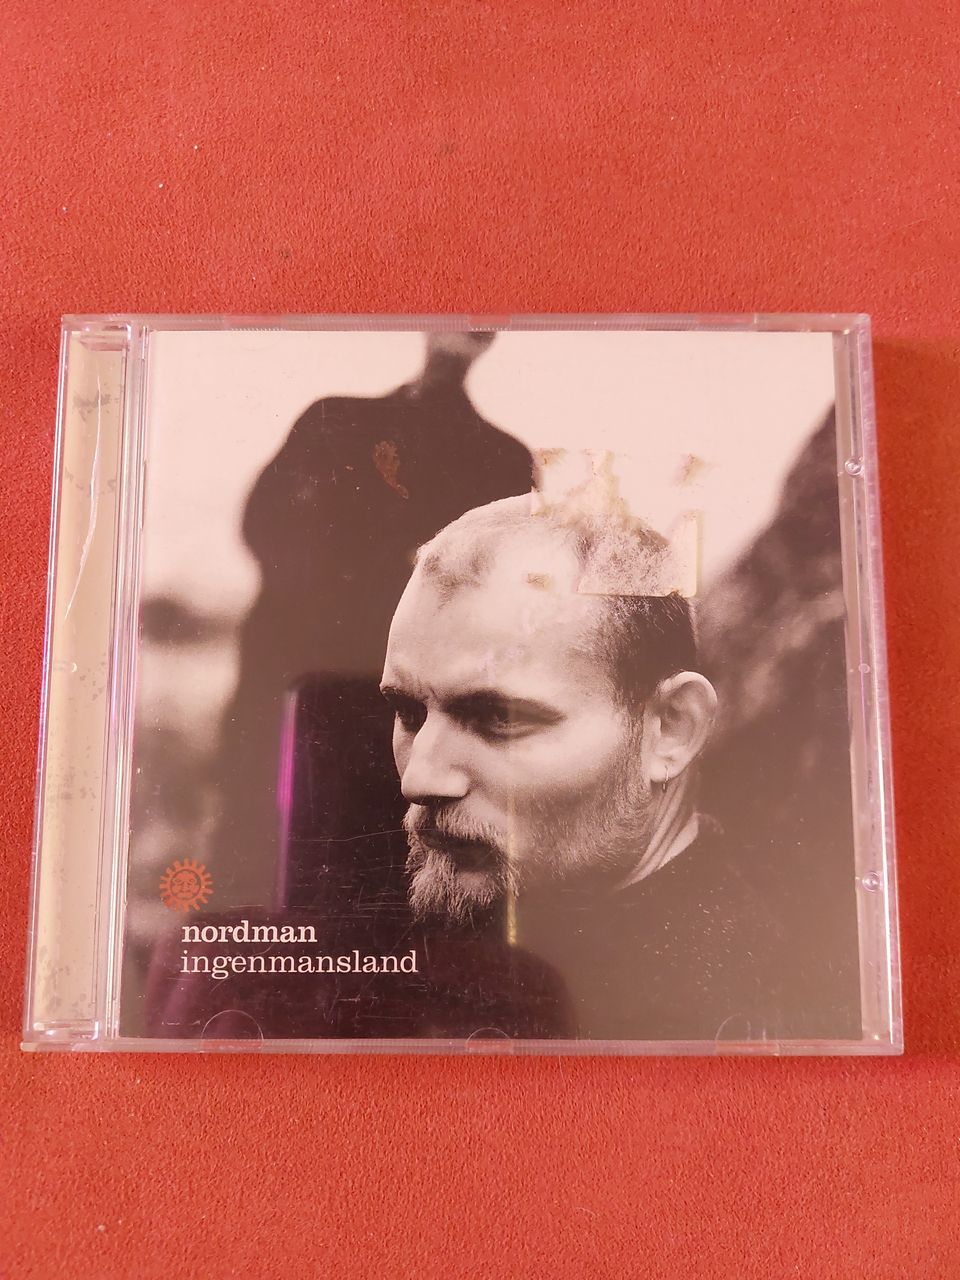 Nordman, Ingenmansland -CD